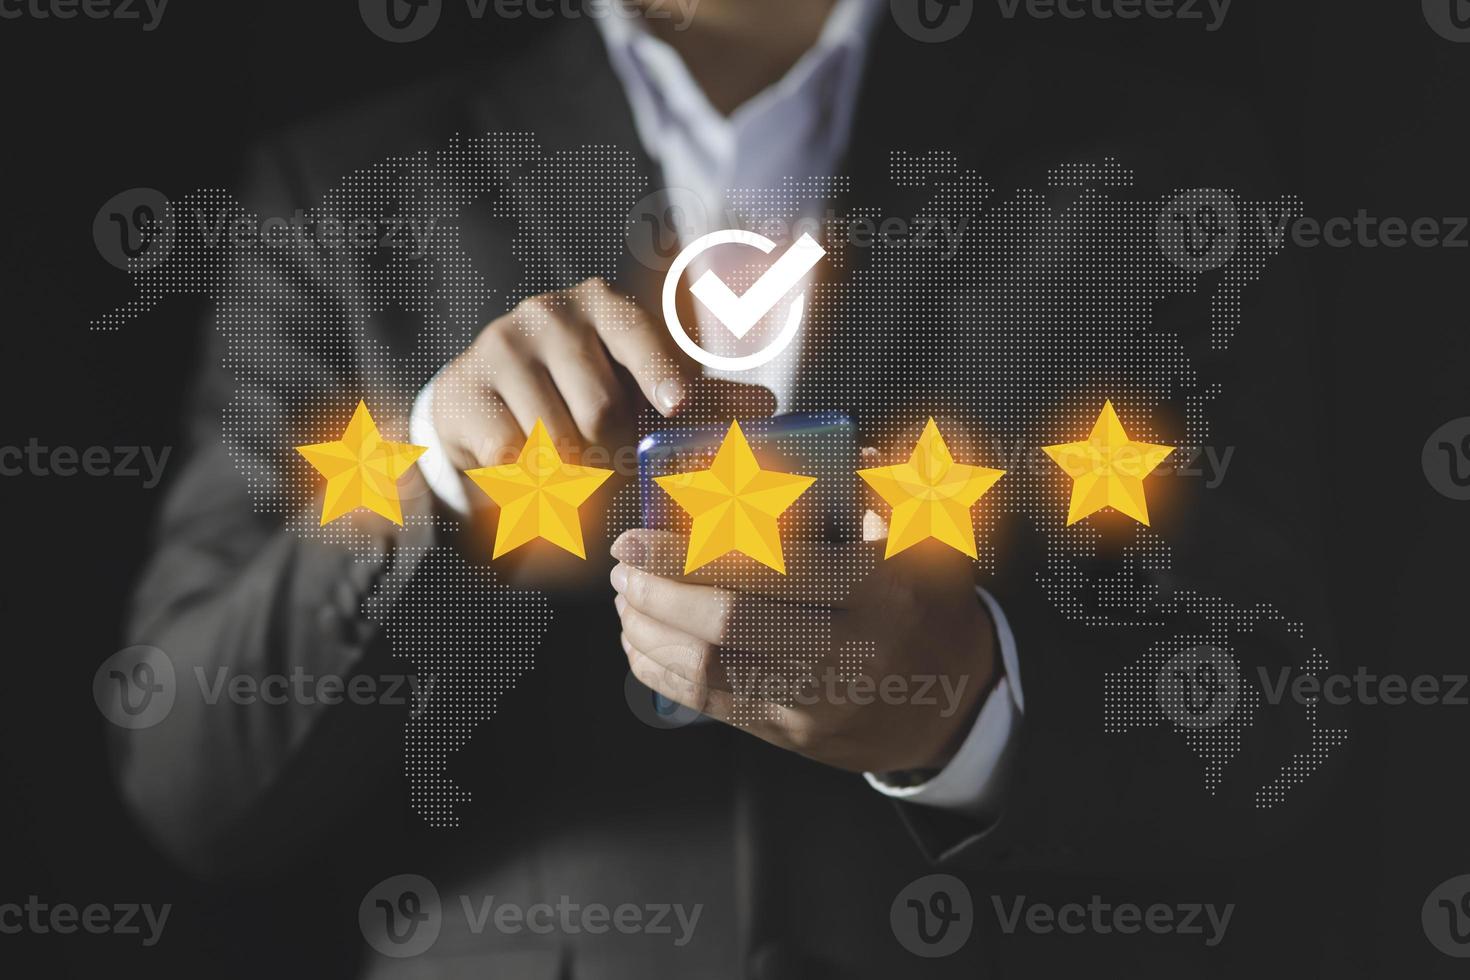 l'homme d'affaires attribue une note à l'expérience de service, au concept d'expérience utilisateur, à l'enquête de satisfaction des clients, au client qui attribue cinq étoiles au classement de l'entreprise photo